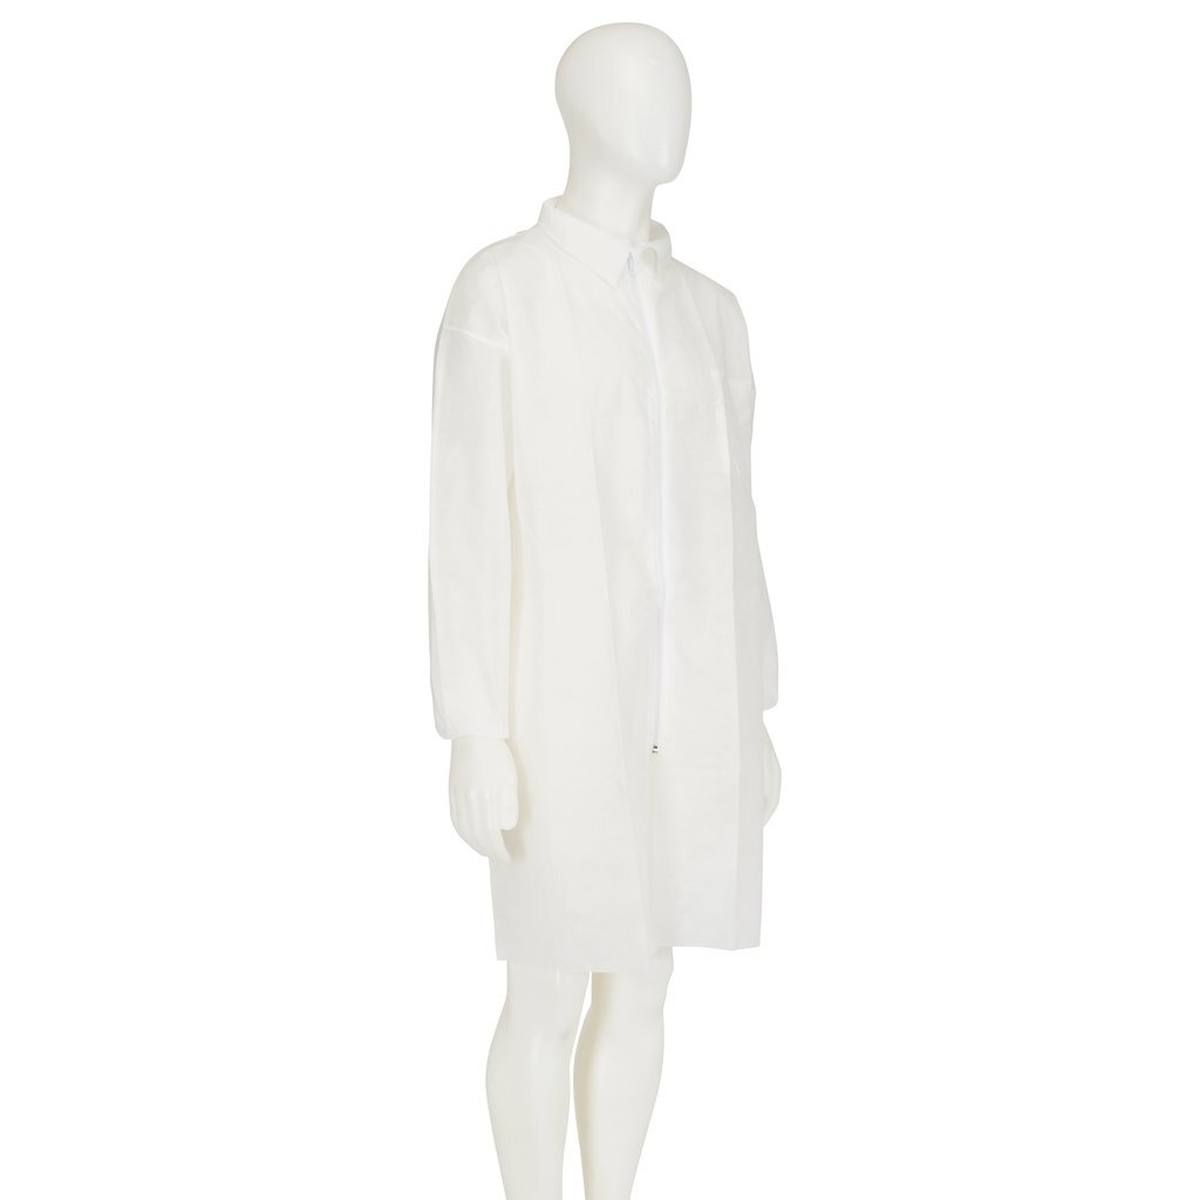 cappotto 3M 4400, bianco, taglia M, materiale 100% polipropilene, traspirante, molto leggero, con chiusura a zip